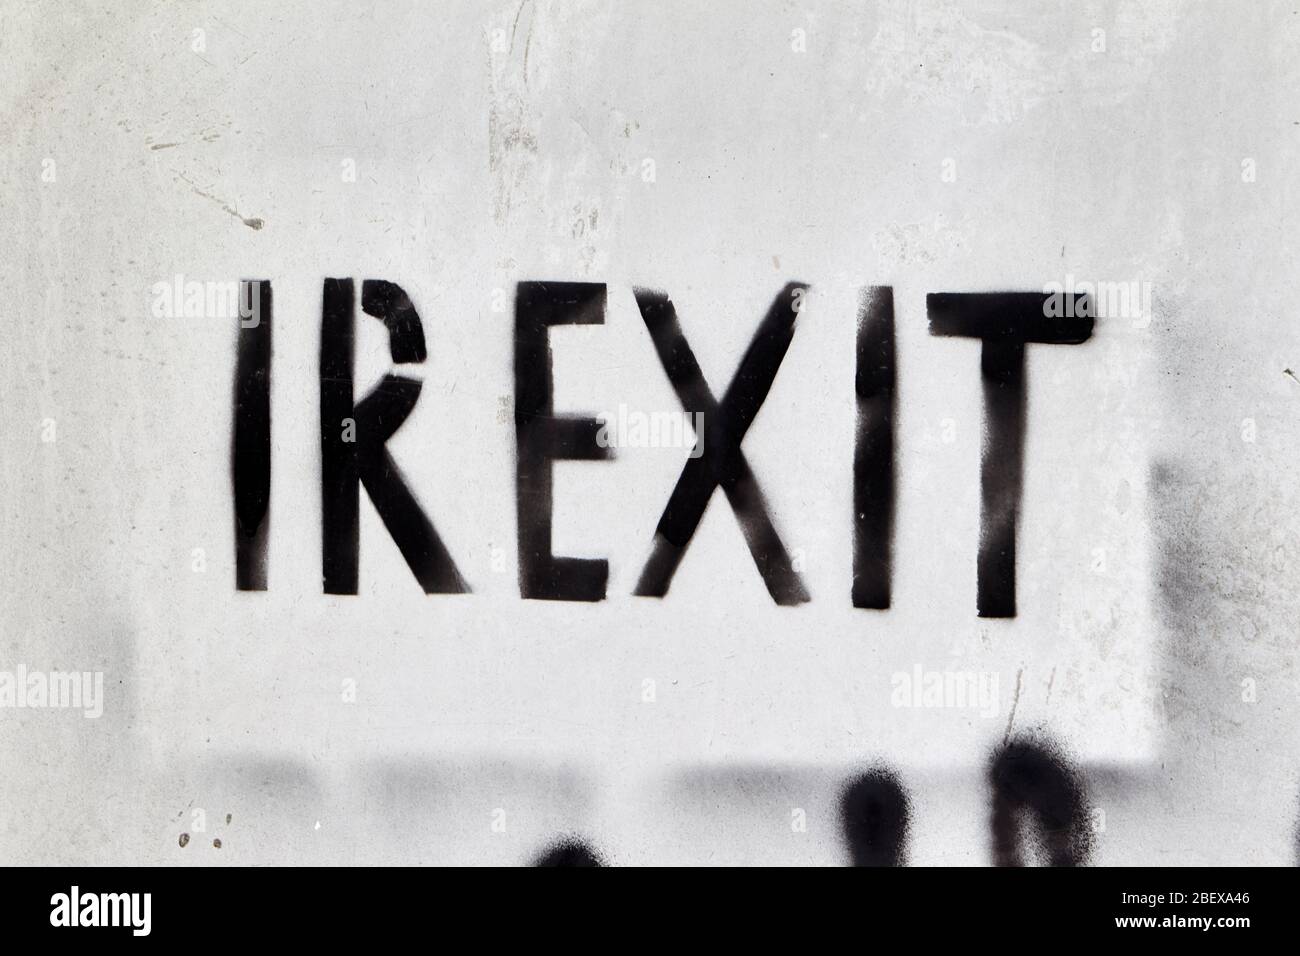 Vaporisez irexit grafitti peint appelant à la sortie irlandaise de l'UE comme le Brexit Banque D'Images